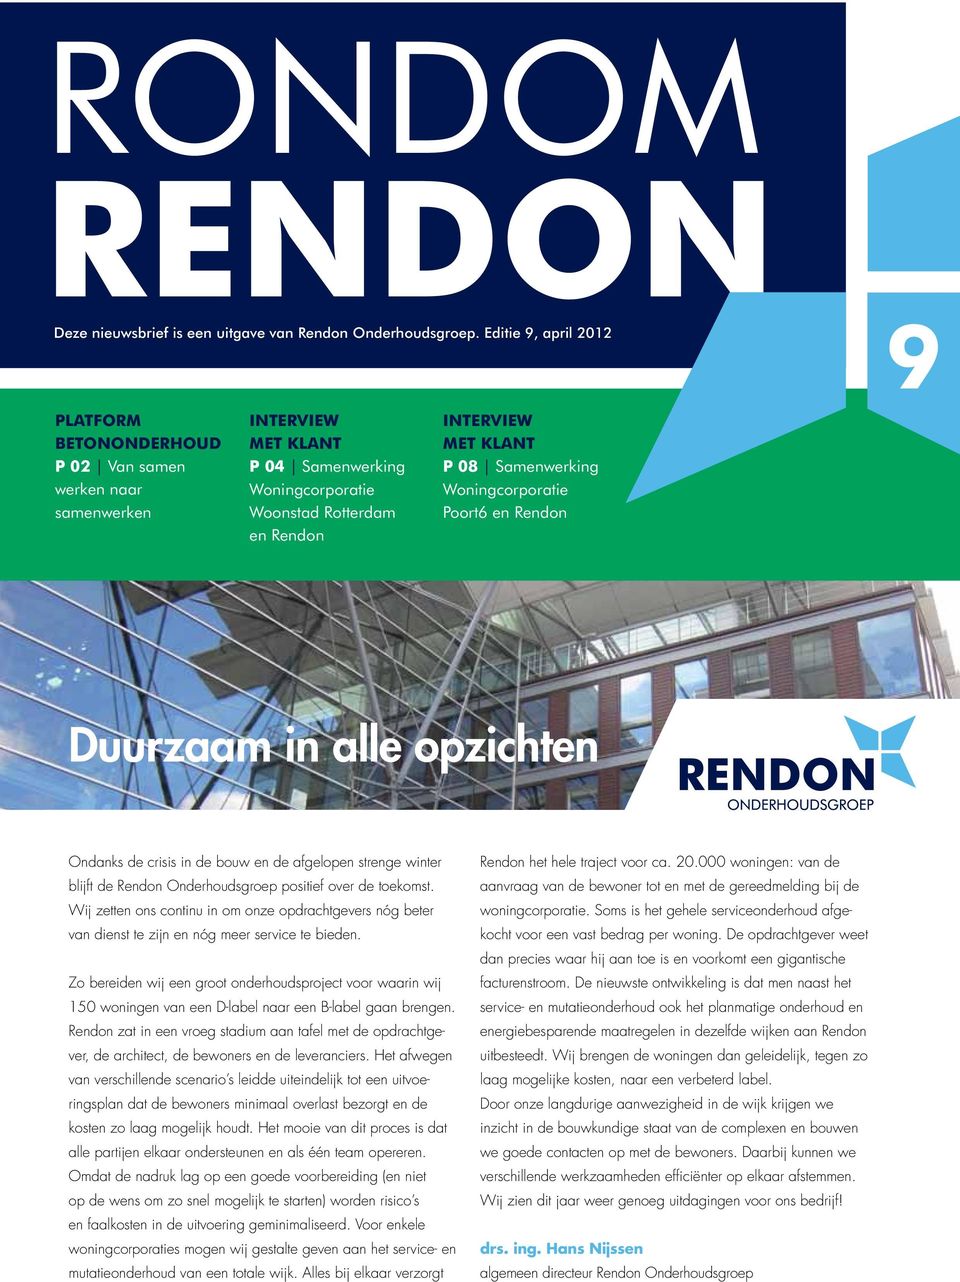 Samenwerking Woningcorporatie Poort6 en Rendon Duurzaam in alle opzichten Ondanks de crisis in de bouw en de afgelopen strenge winter blijft de Rendon Onderhoudsgroep positief over de toekomst.